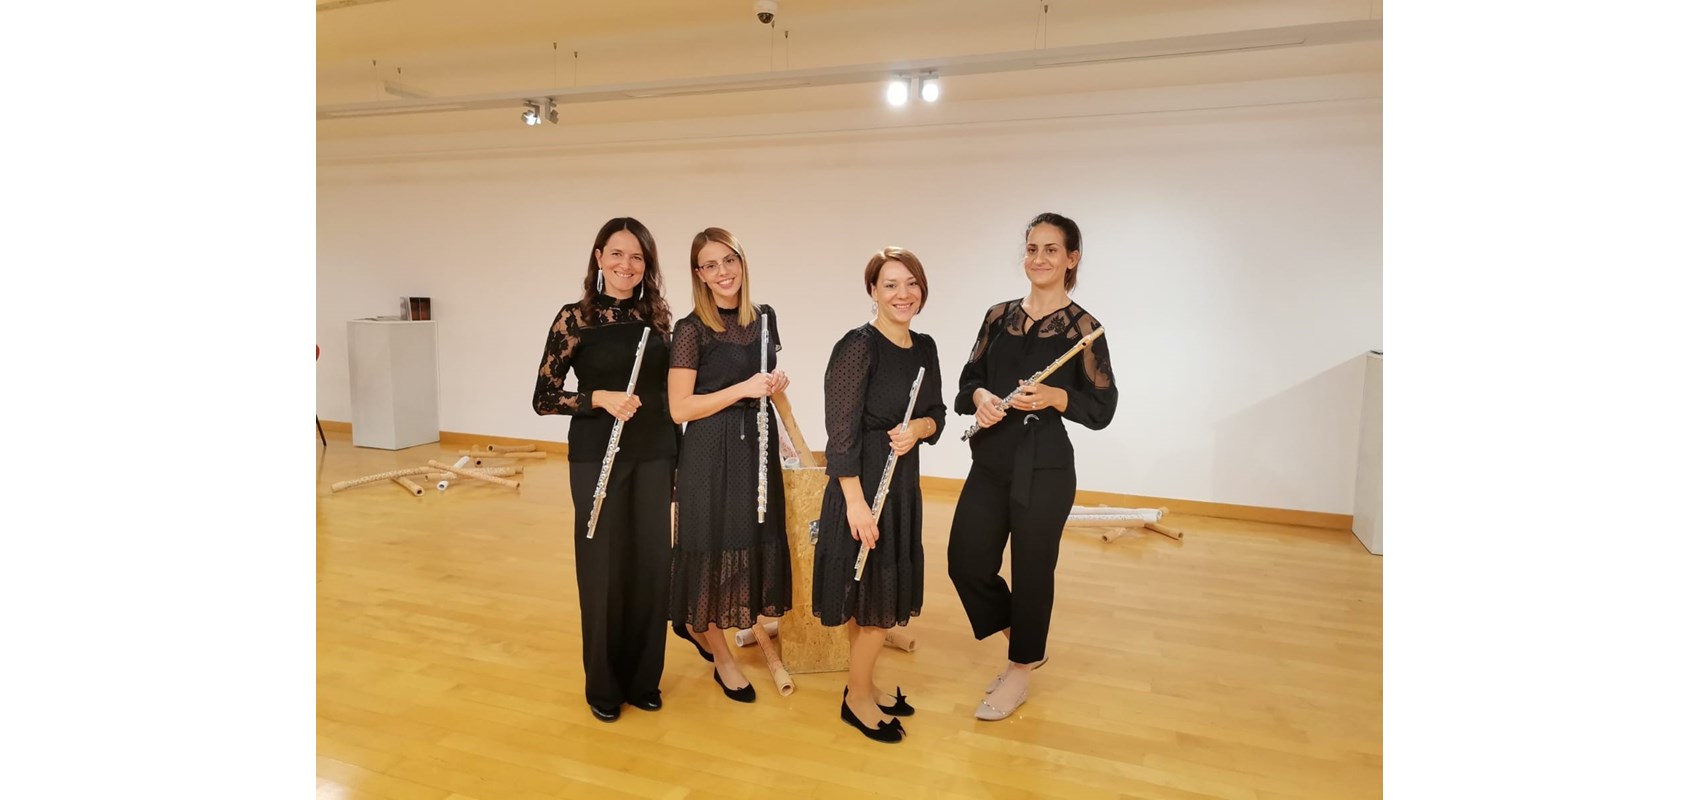 Koncert  kvarteta flauta Image u Sveučilišnoj galeriji